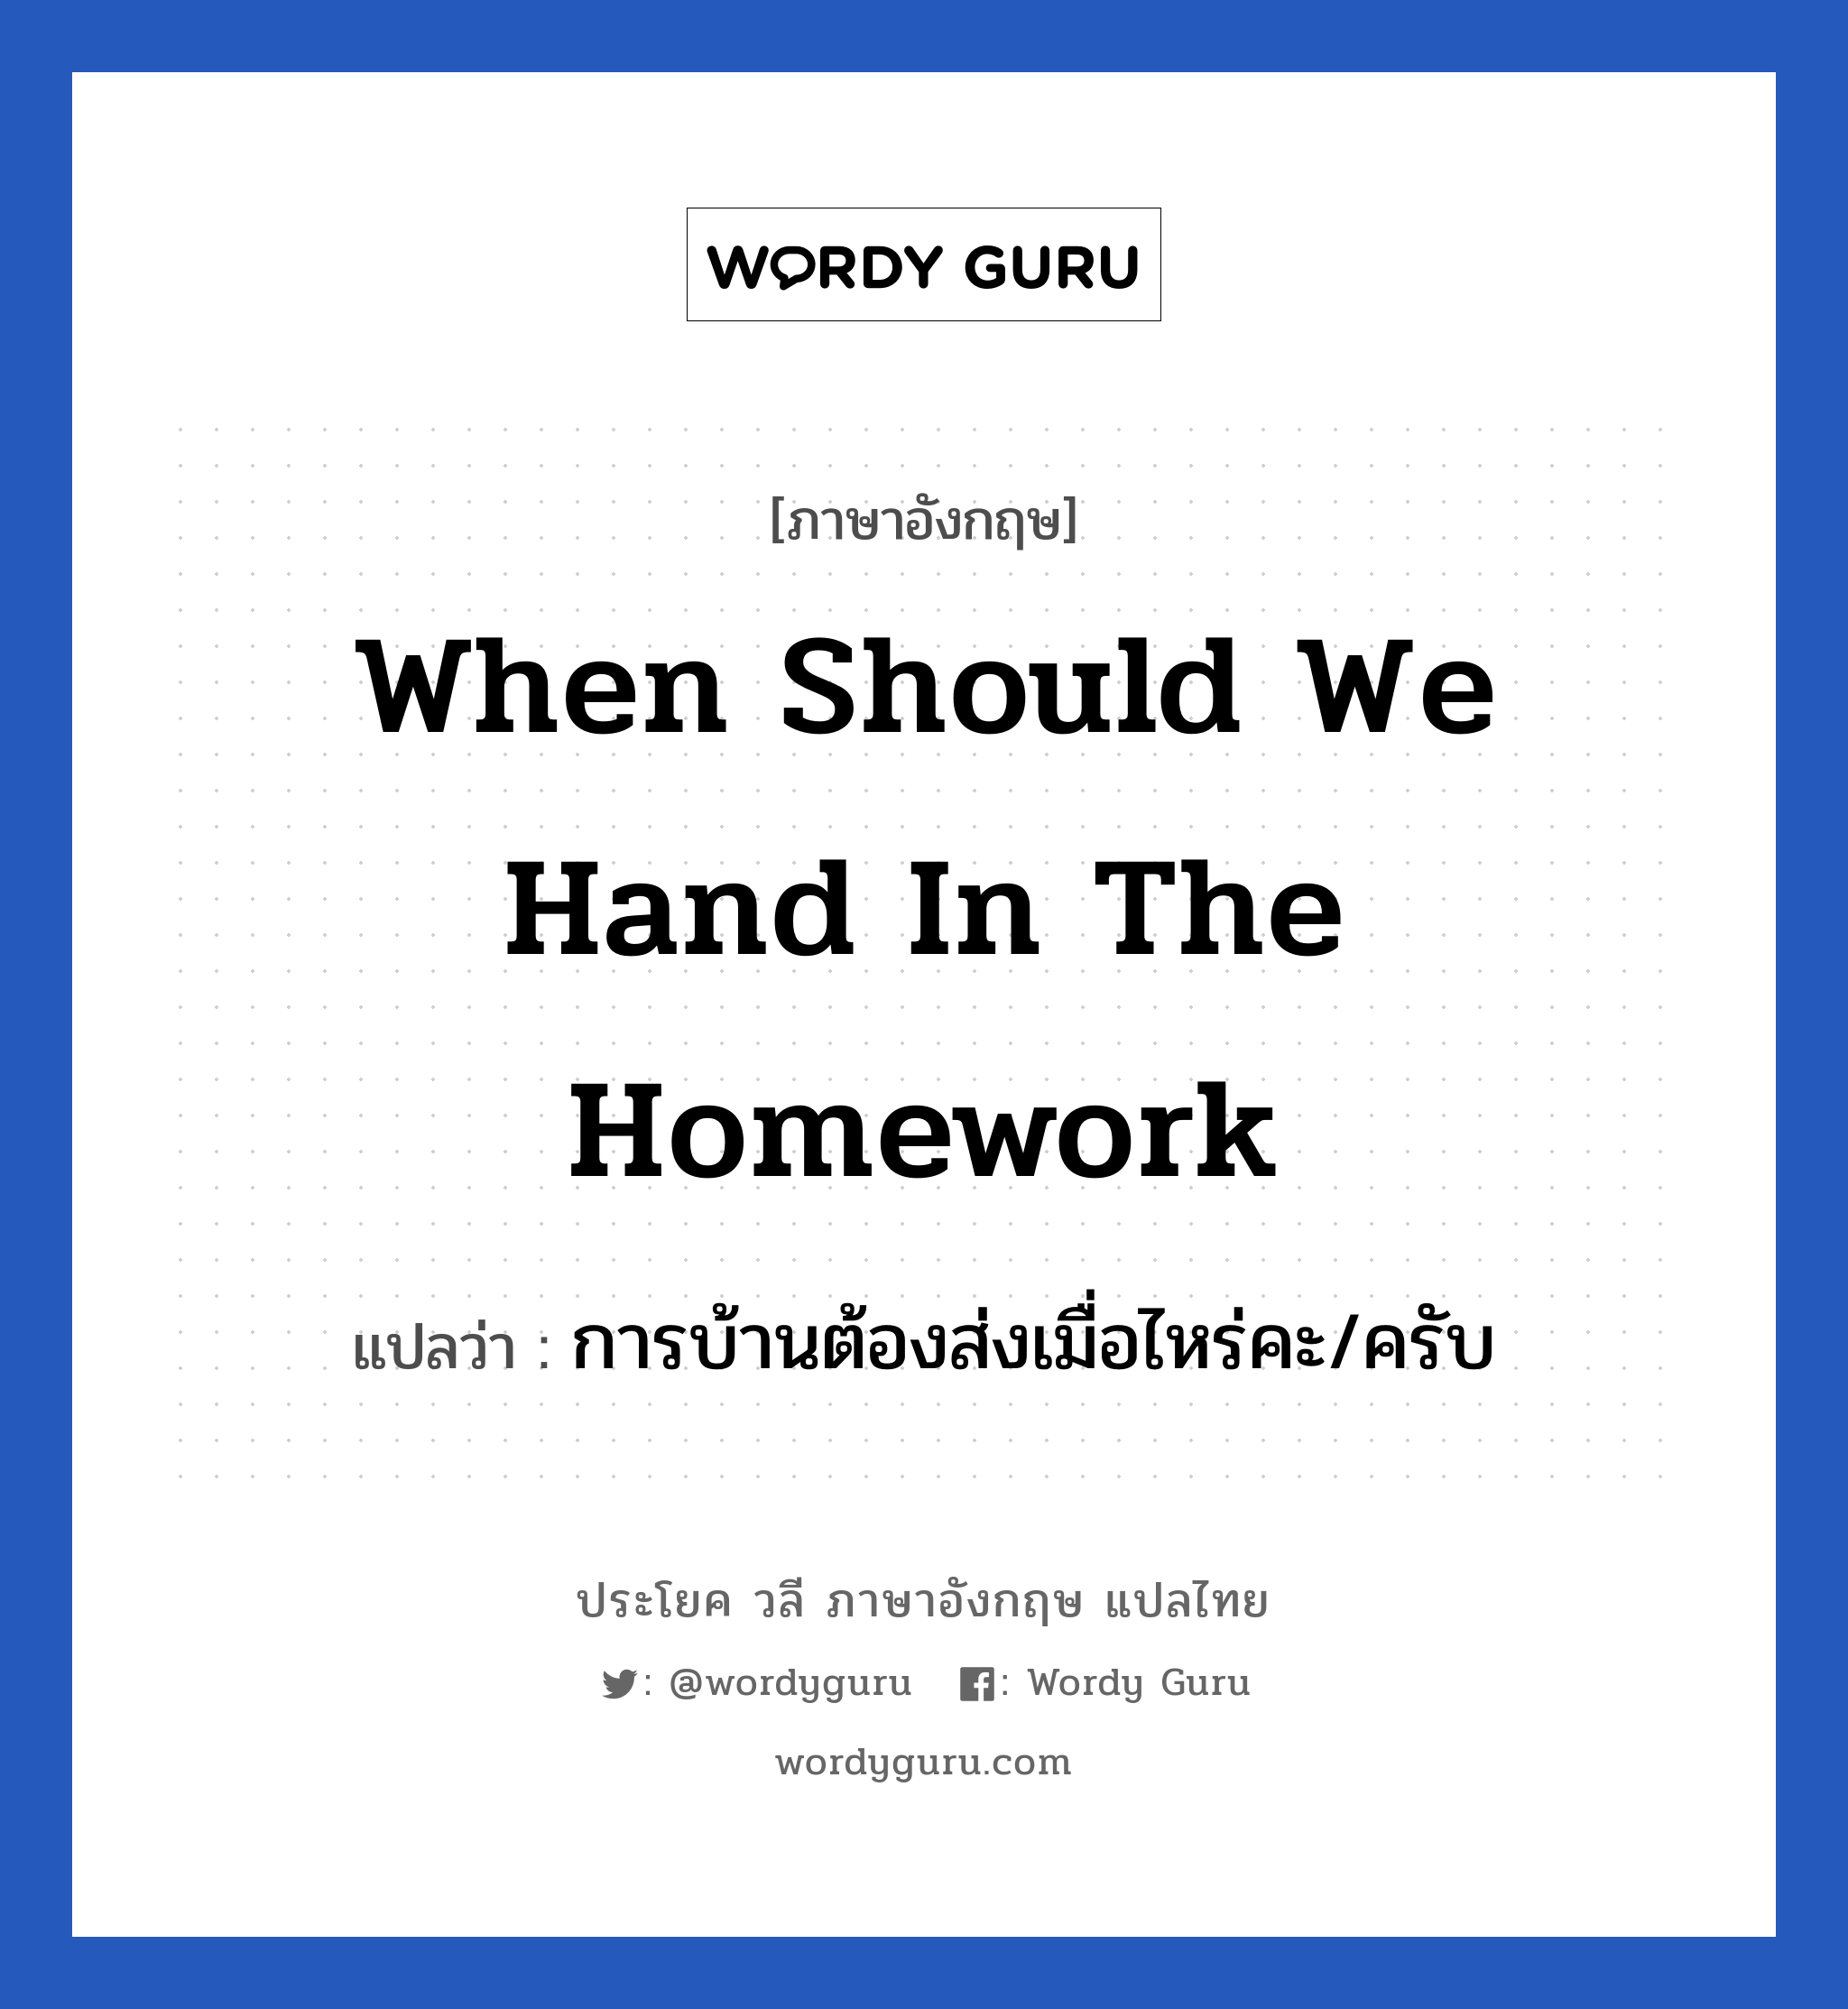 การบ้านต้องส่งเมื่อไหร่คะ/ครับ ภาษาอังกฤษ?, วลีภาษาอังกฤษ การบ้านต้องส่งเมื่อไหร่คะ/ครับ แปลว่า When should we hand in the homework